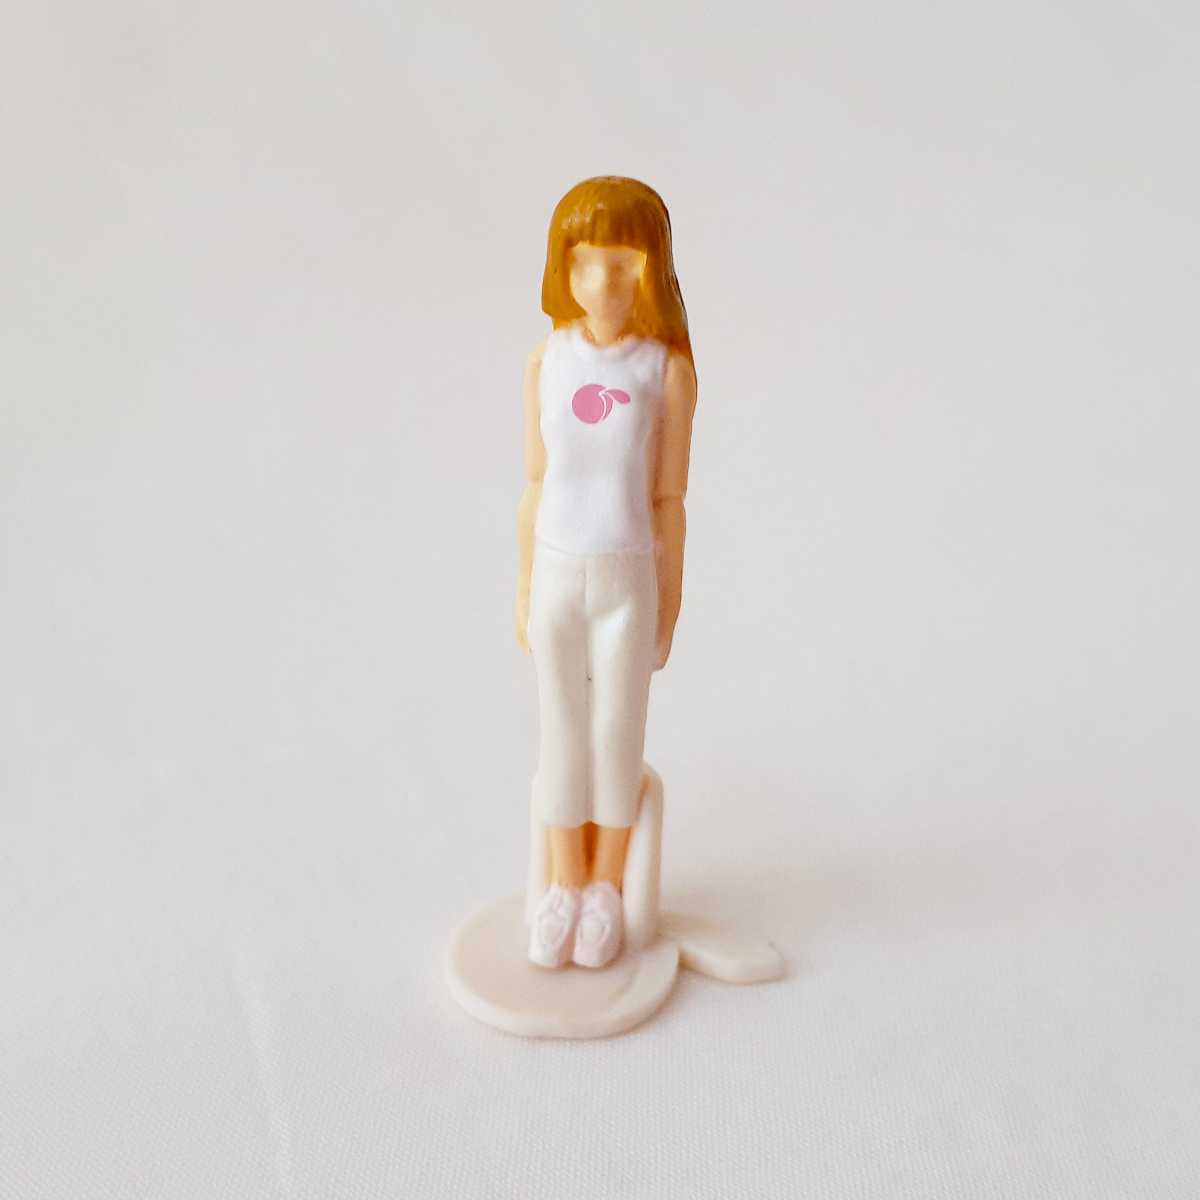 新品未使用●超貴重レア●momoko doll 「1/36 momokodoll」 ruruko モモコドール ブライス cherryちゃん リカちゃん バービー Barbie 人形w_画像3